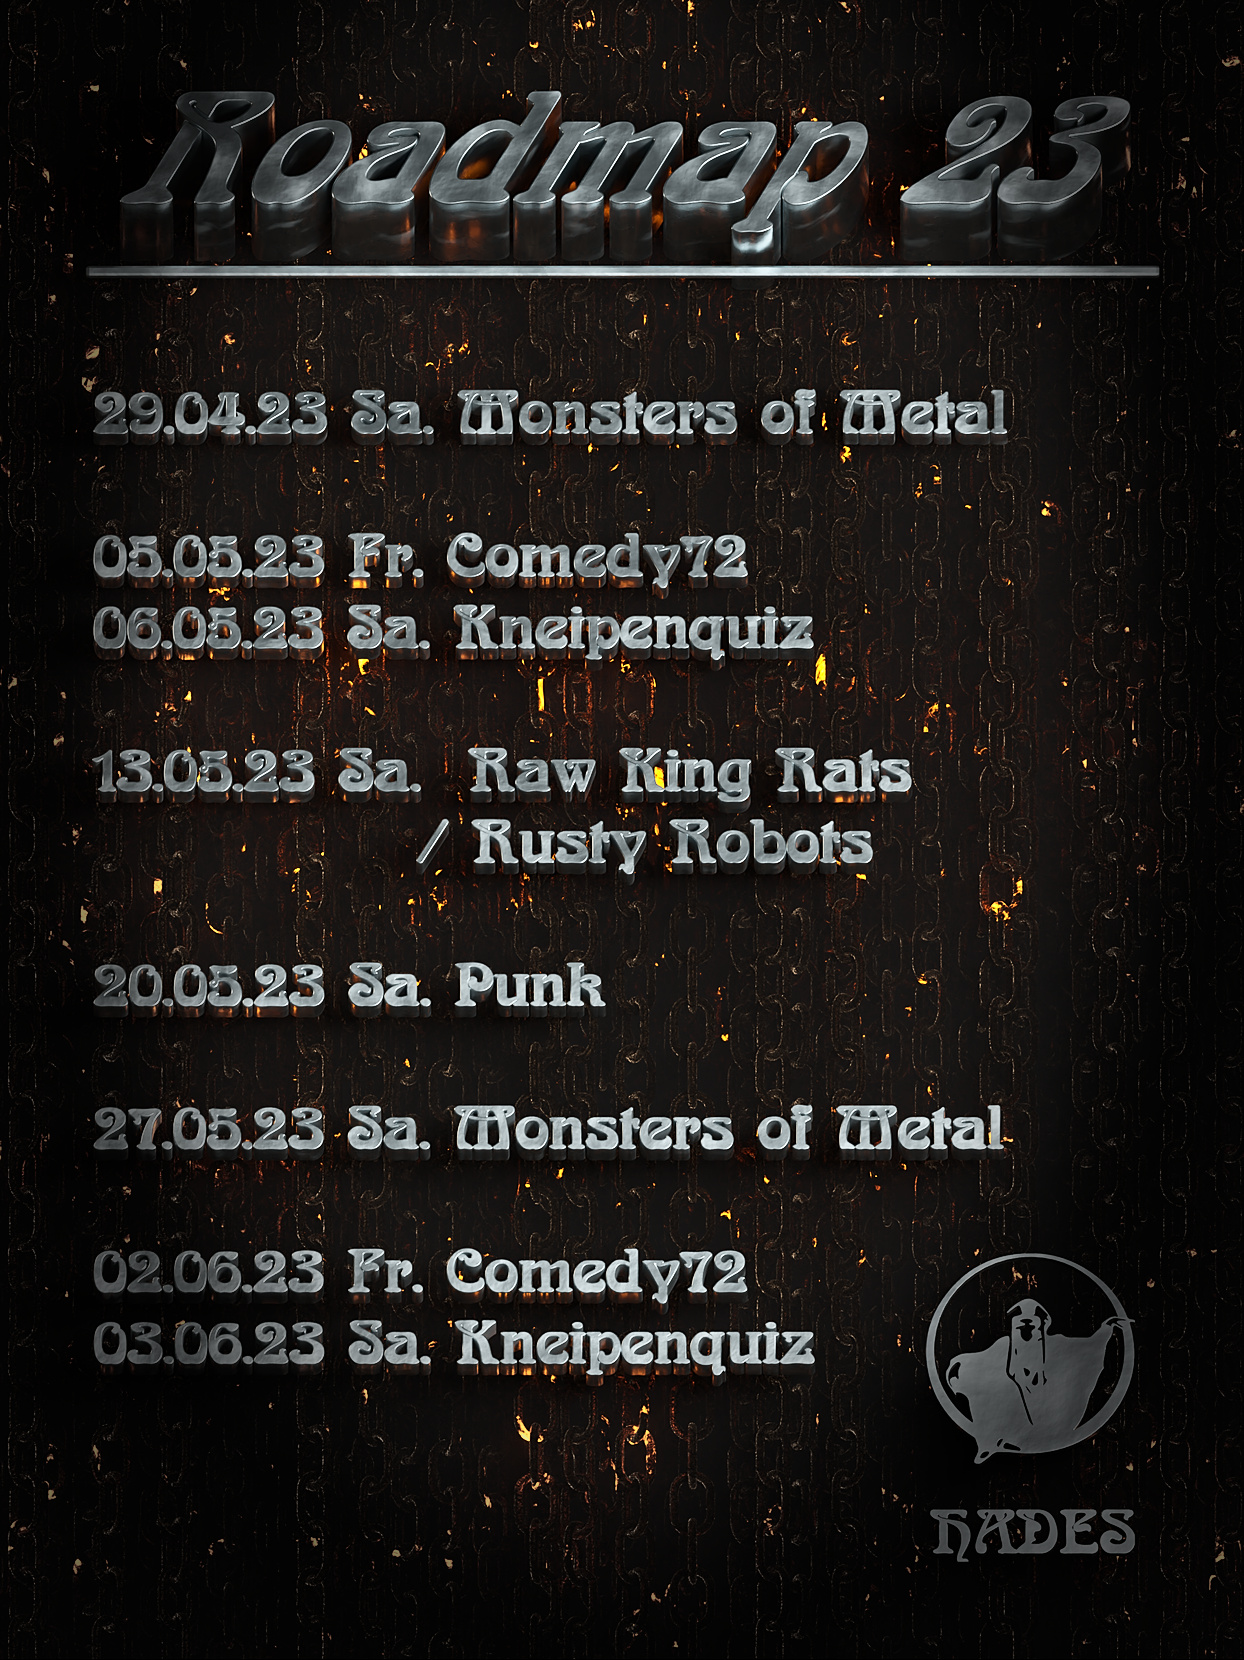 
		  	29.04.23 Sa. Monsters of Metal

			05.05.23 Fr. Comedy72
			06.05.23 Sa. Kneipenquiz
			
			13.05.23 Sa. Raw King Rats / Rusty Robots (live)

			20.05.23 Sa. Punk

			27.05.23 Sa. Monsters of Metal
			
			02.06.23 Fr. Comedy72
			03.06.23 Sa. Kneipenquiz
		  	